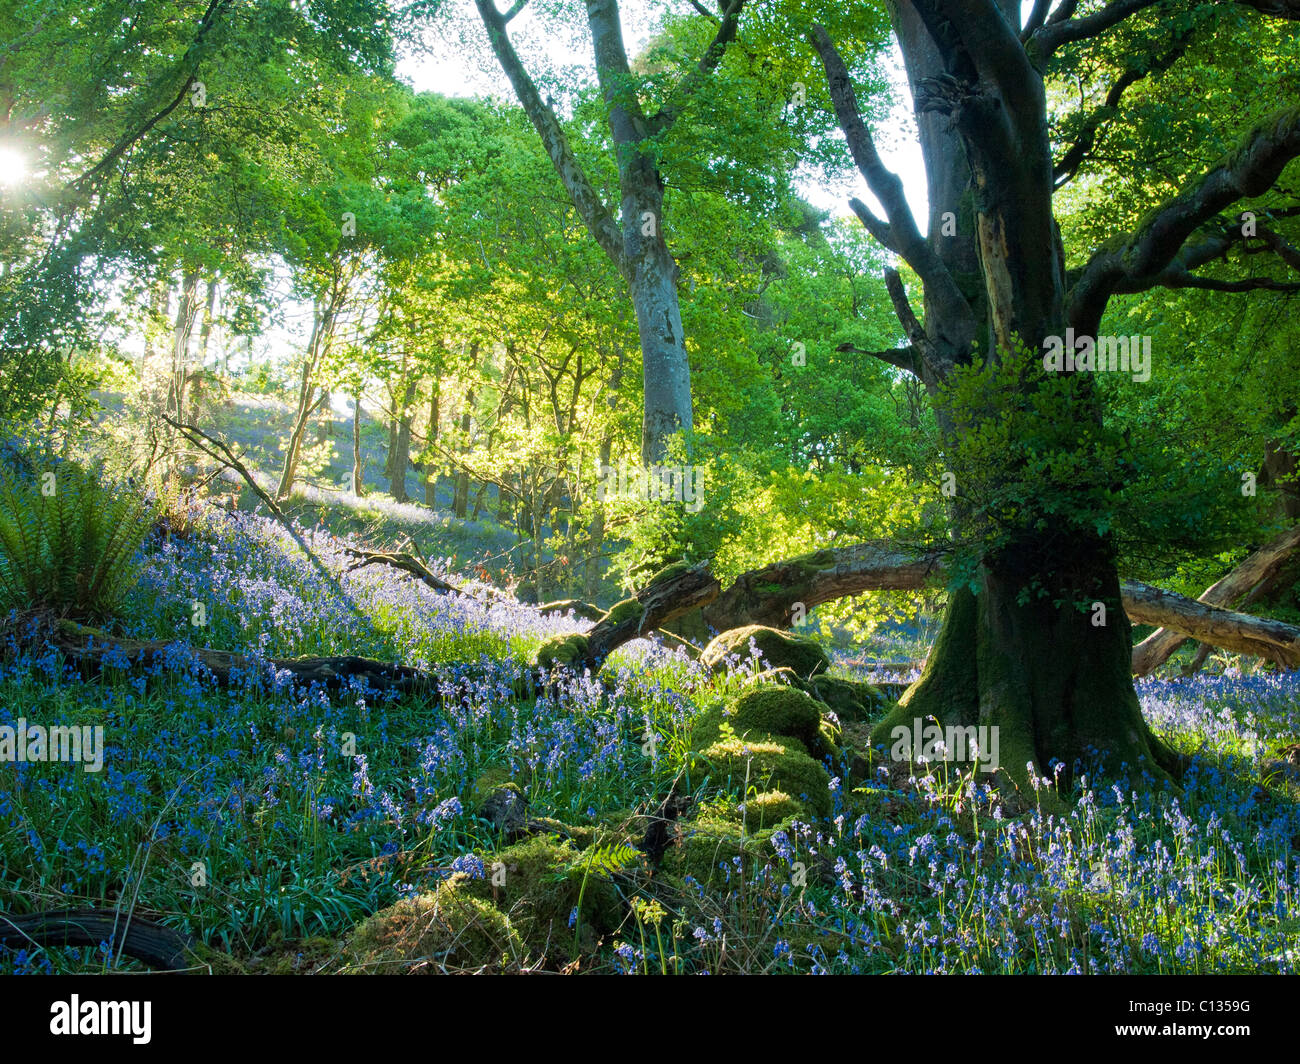 Castramon Reserva Natural con bosque mixto con campanillas y árboles de roble en primavera Foto de stock